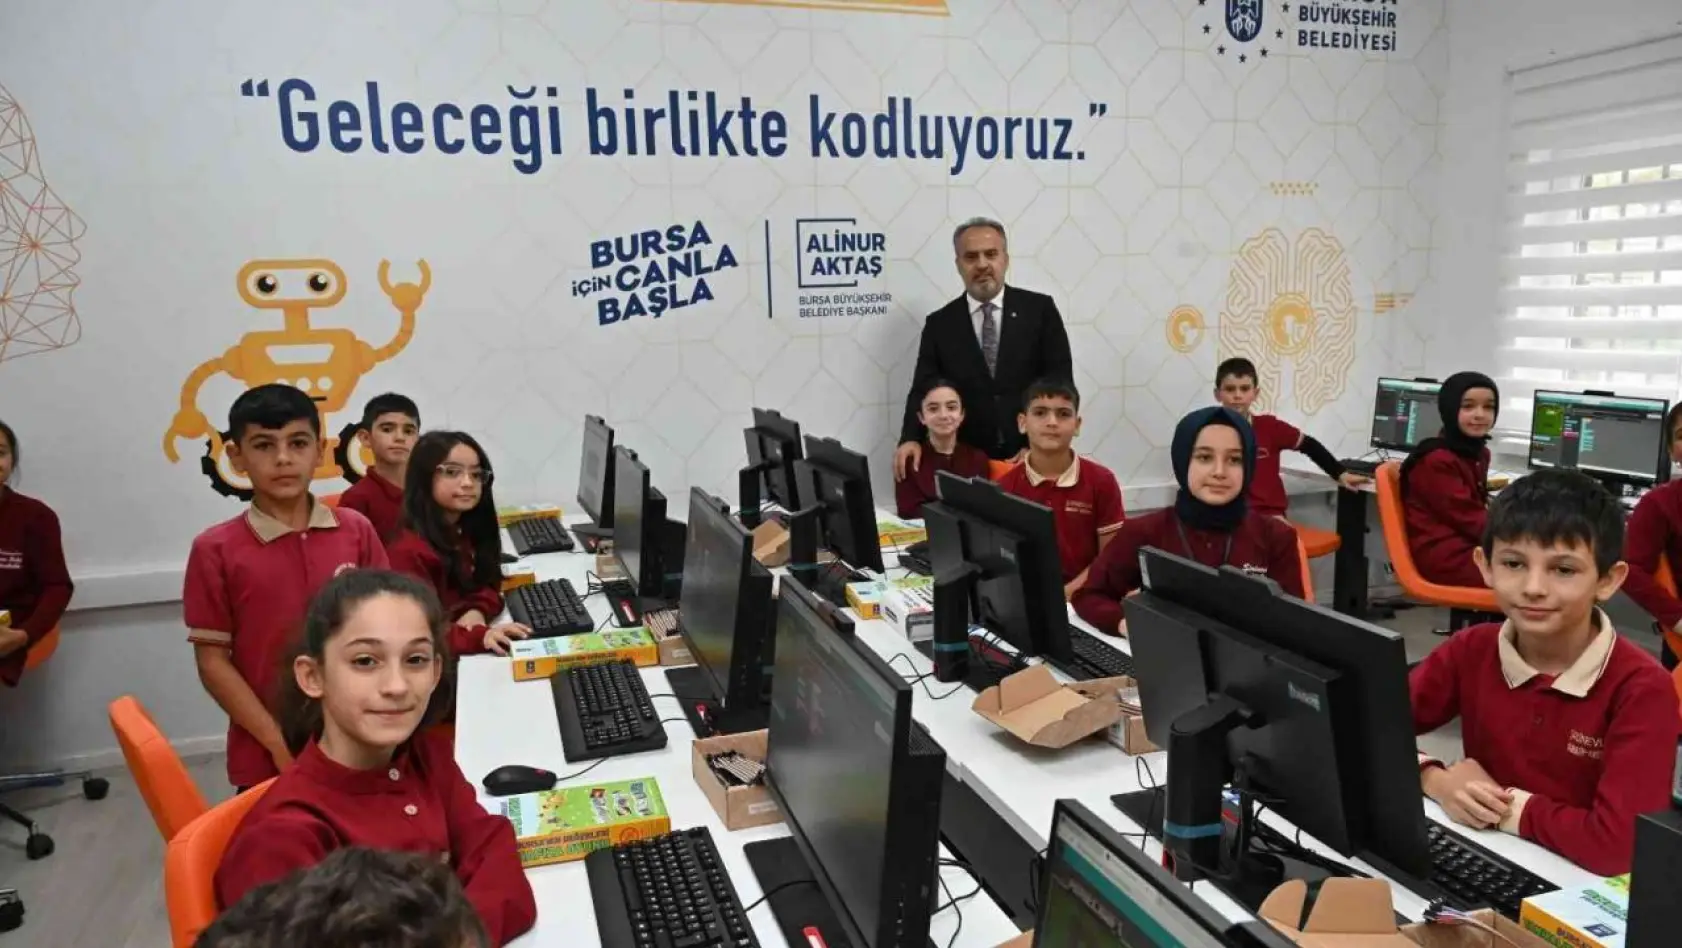 Bursa Büyükşehir'den okullara teknolojik destek